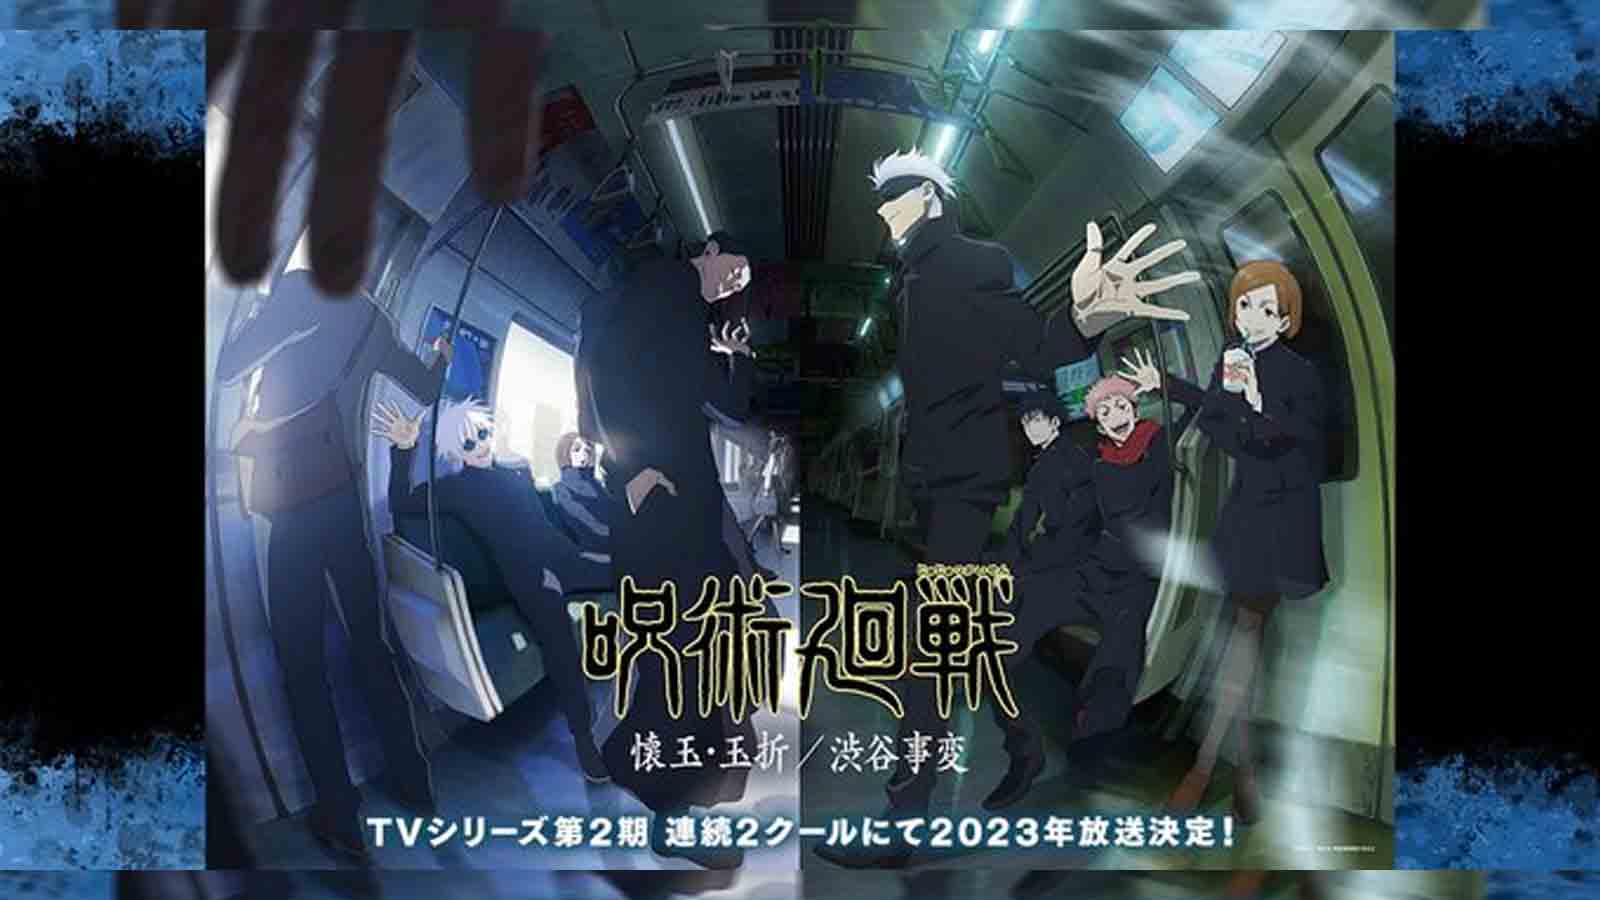 Fecha de emisión de la temporada 2 de Jujutsu Kaisen, personajes clave revelados